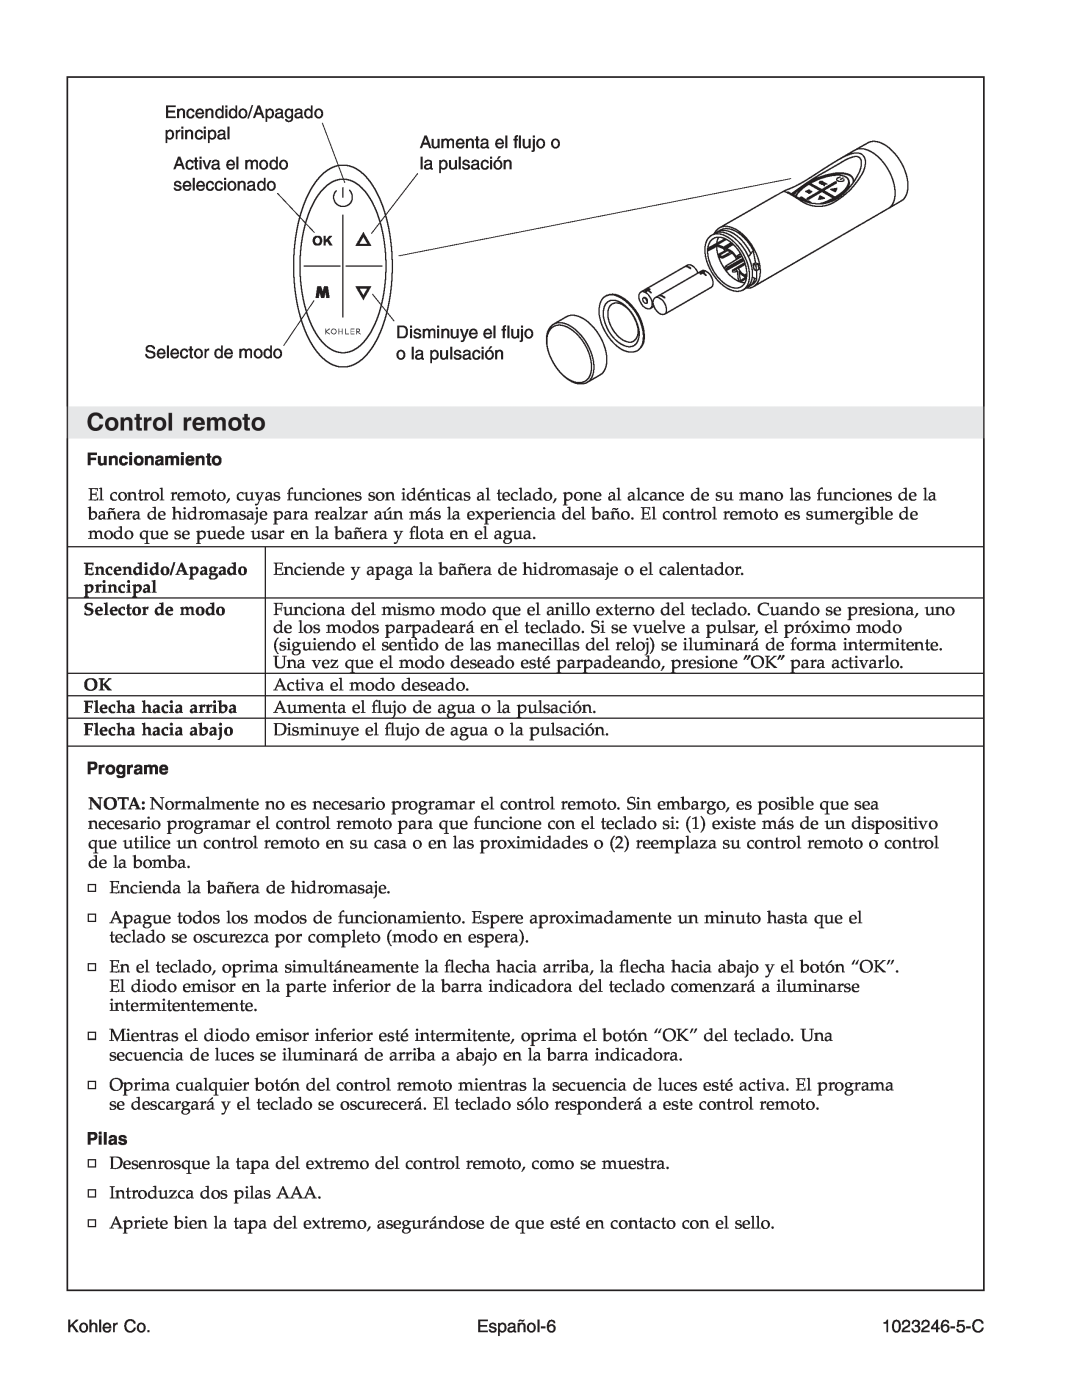 Kohler K-1418-CT manual Control remoto, Funcionamiento, Programe, Pilas 